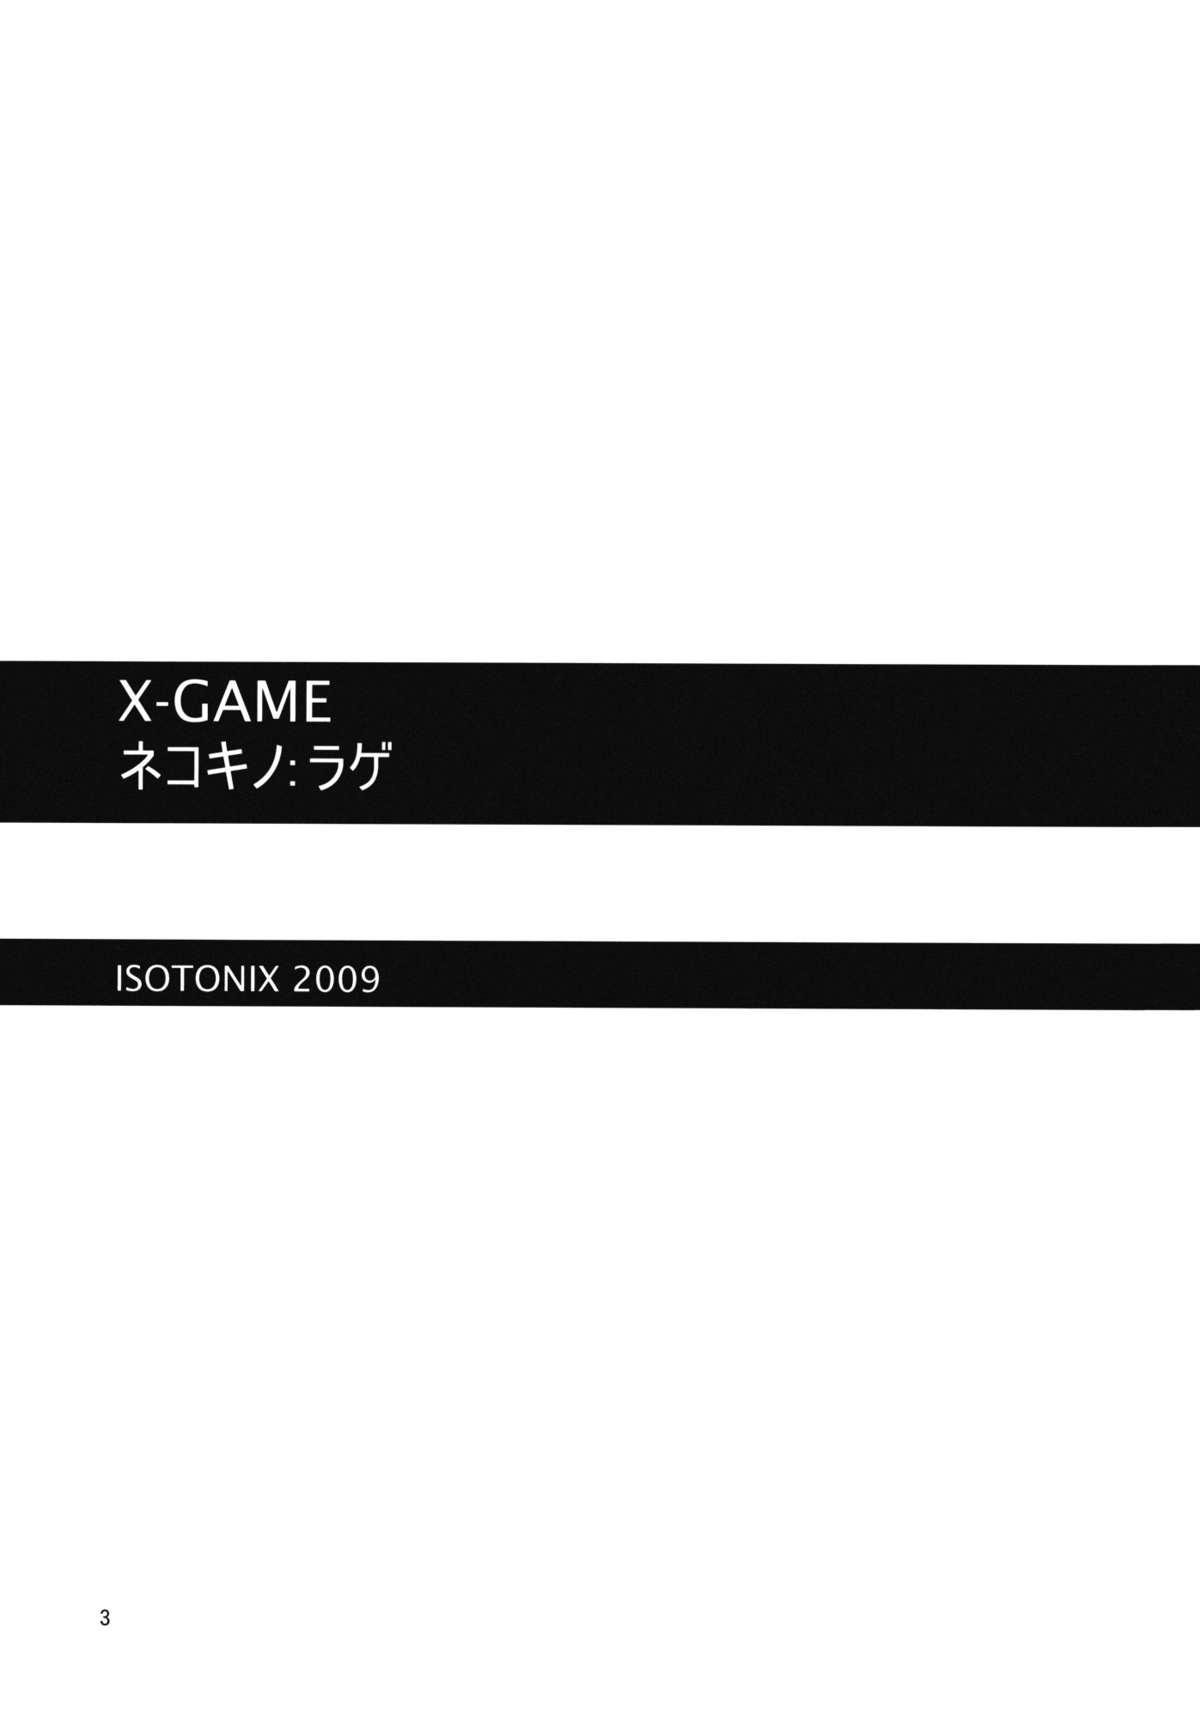 X-GAME Nekokino: Rage 1